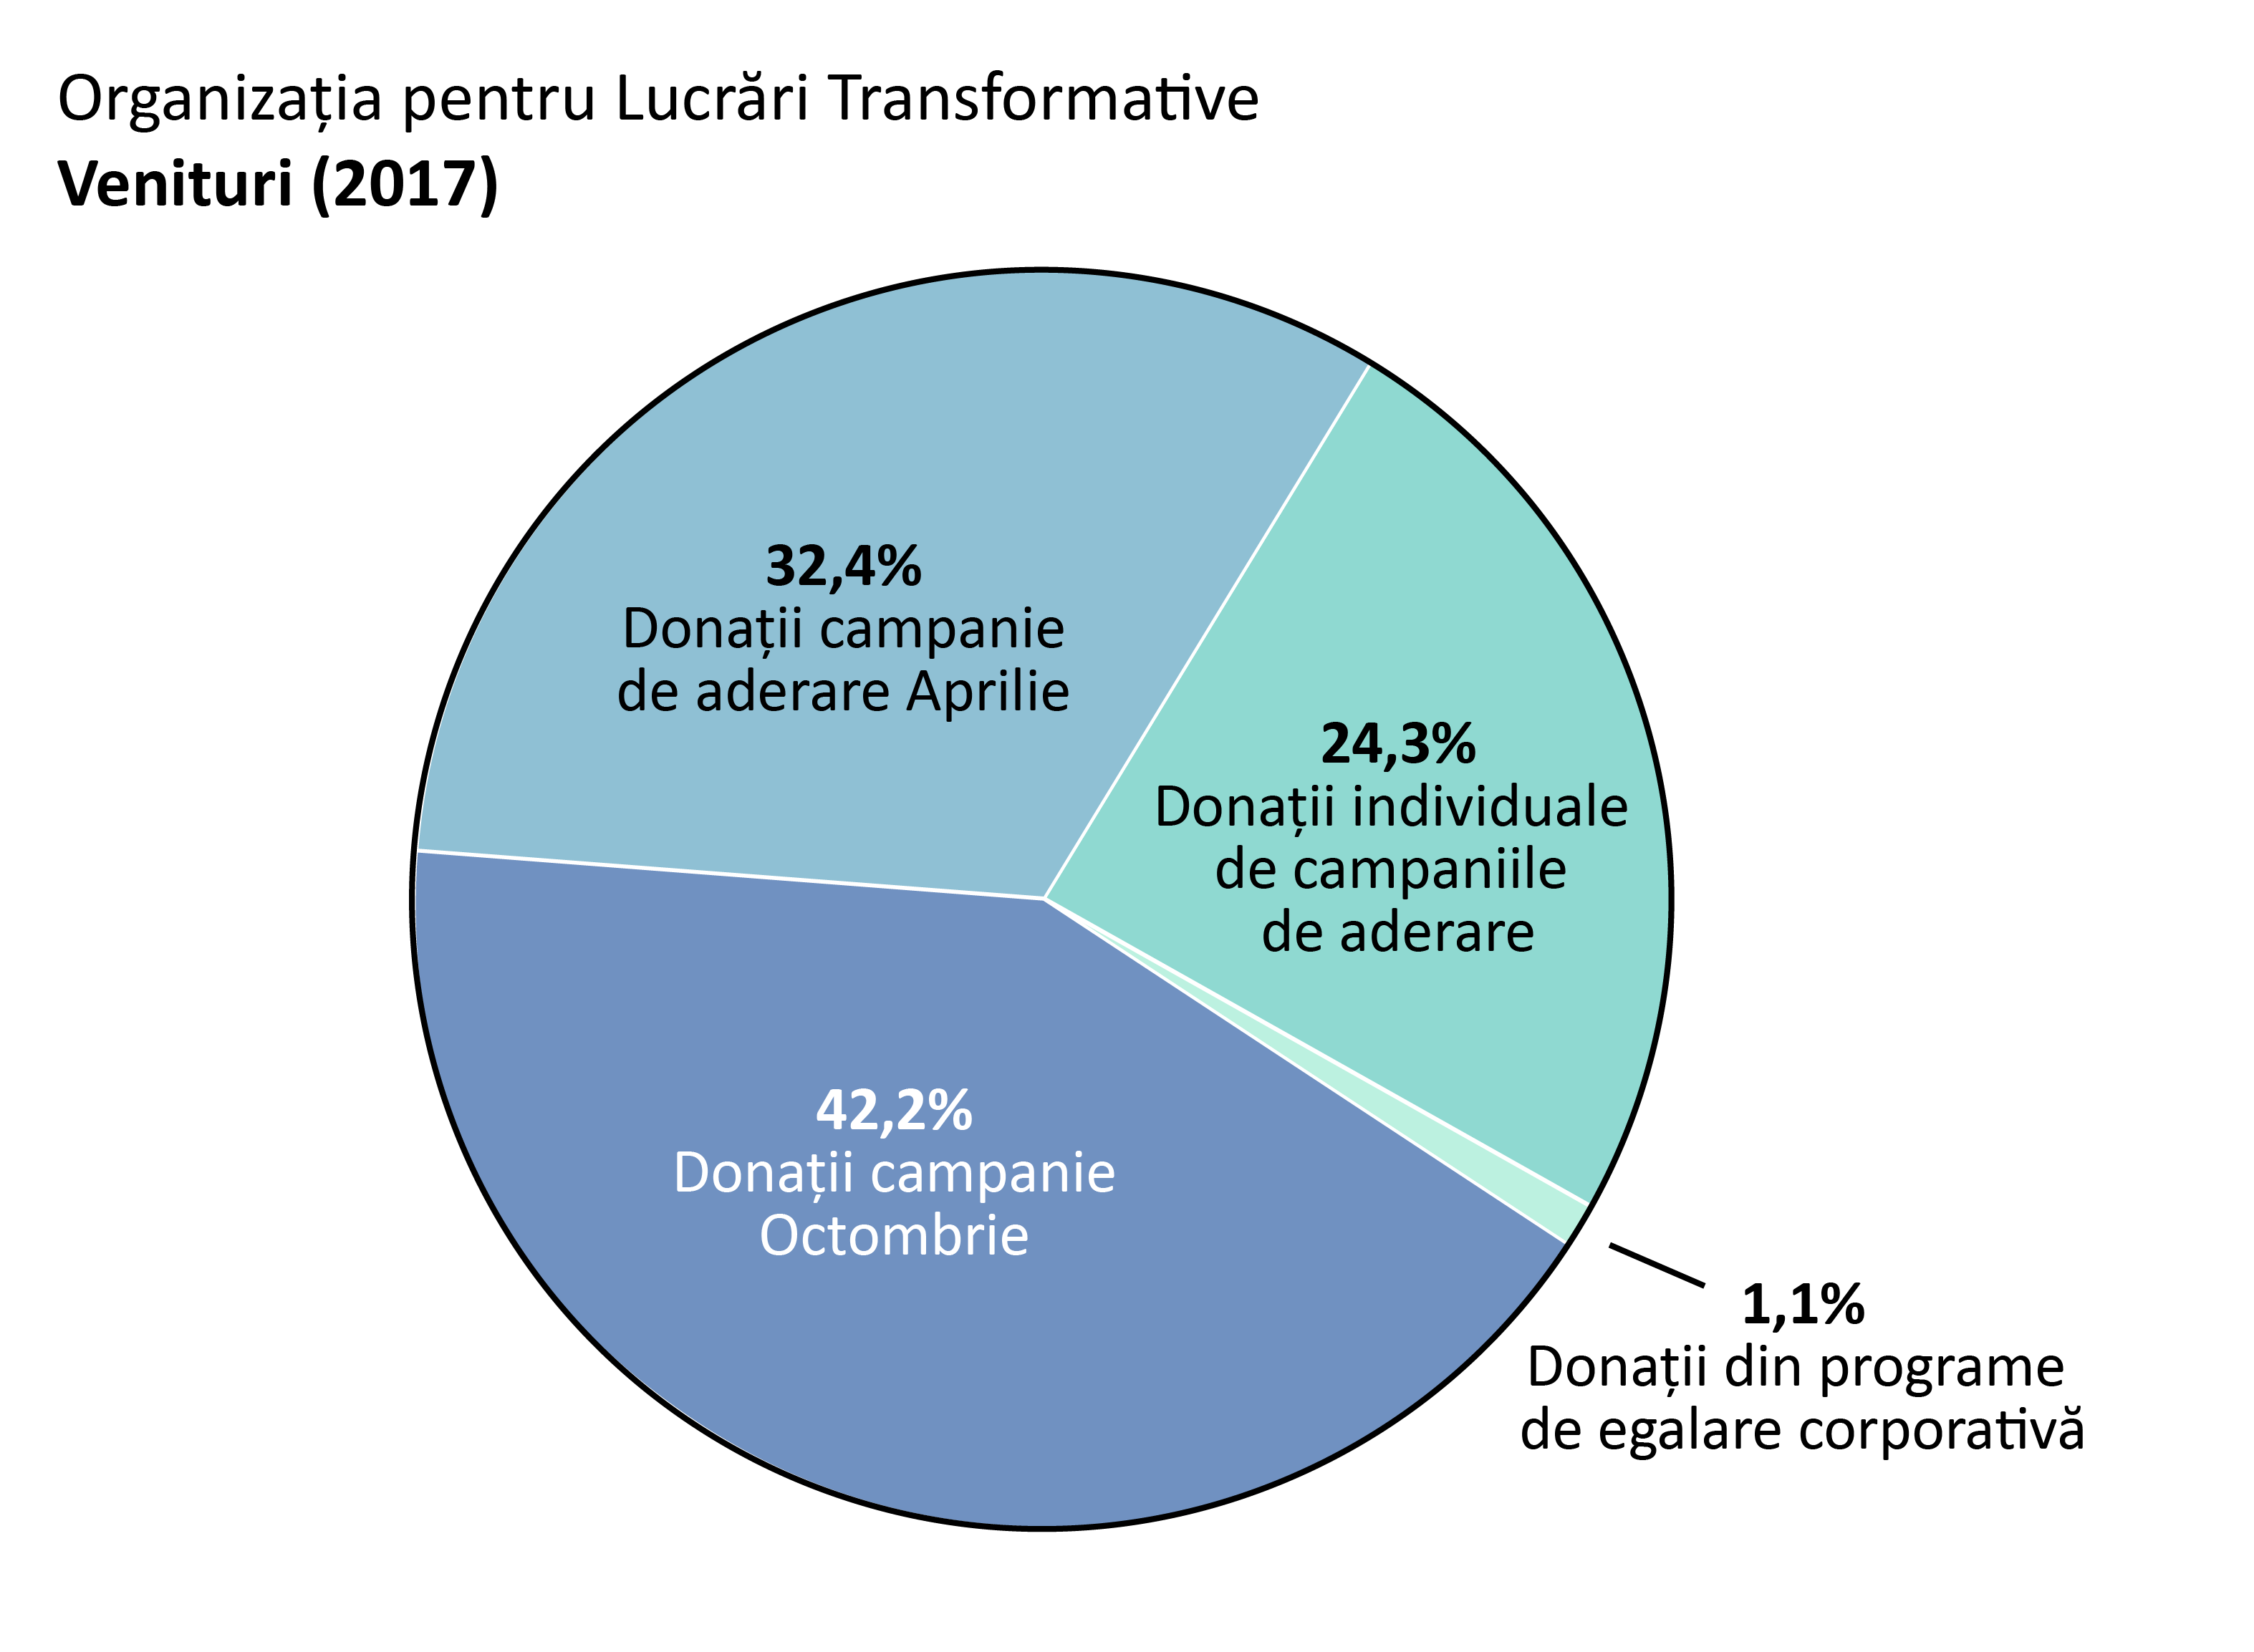 Venituri 2017: donații campanie de aderare Aprilie: 32.4%,donați campanie Octombrie: 42.2%. Donații individuale de campaniile de aderare: 24.3%. Donații din programe de egalare corporativă: 1.1%.